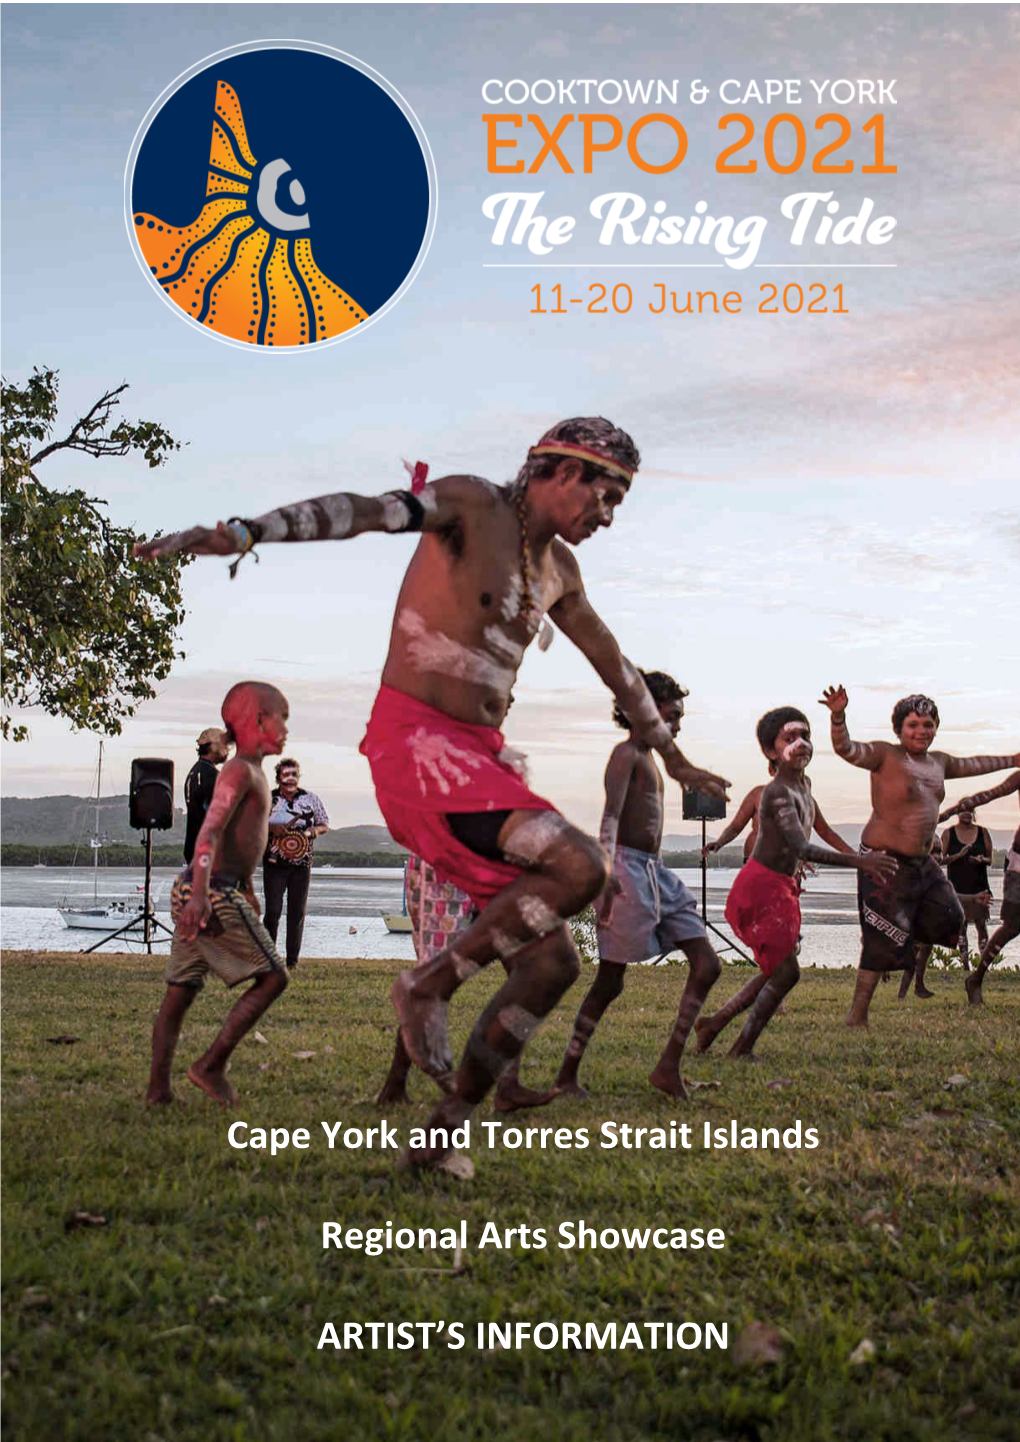 Cape York and Torres Strait Islands Regional Arts Showcase ARTIST's